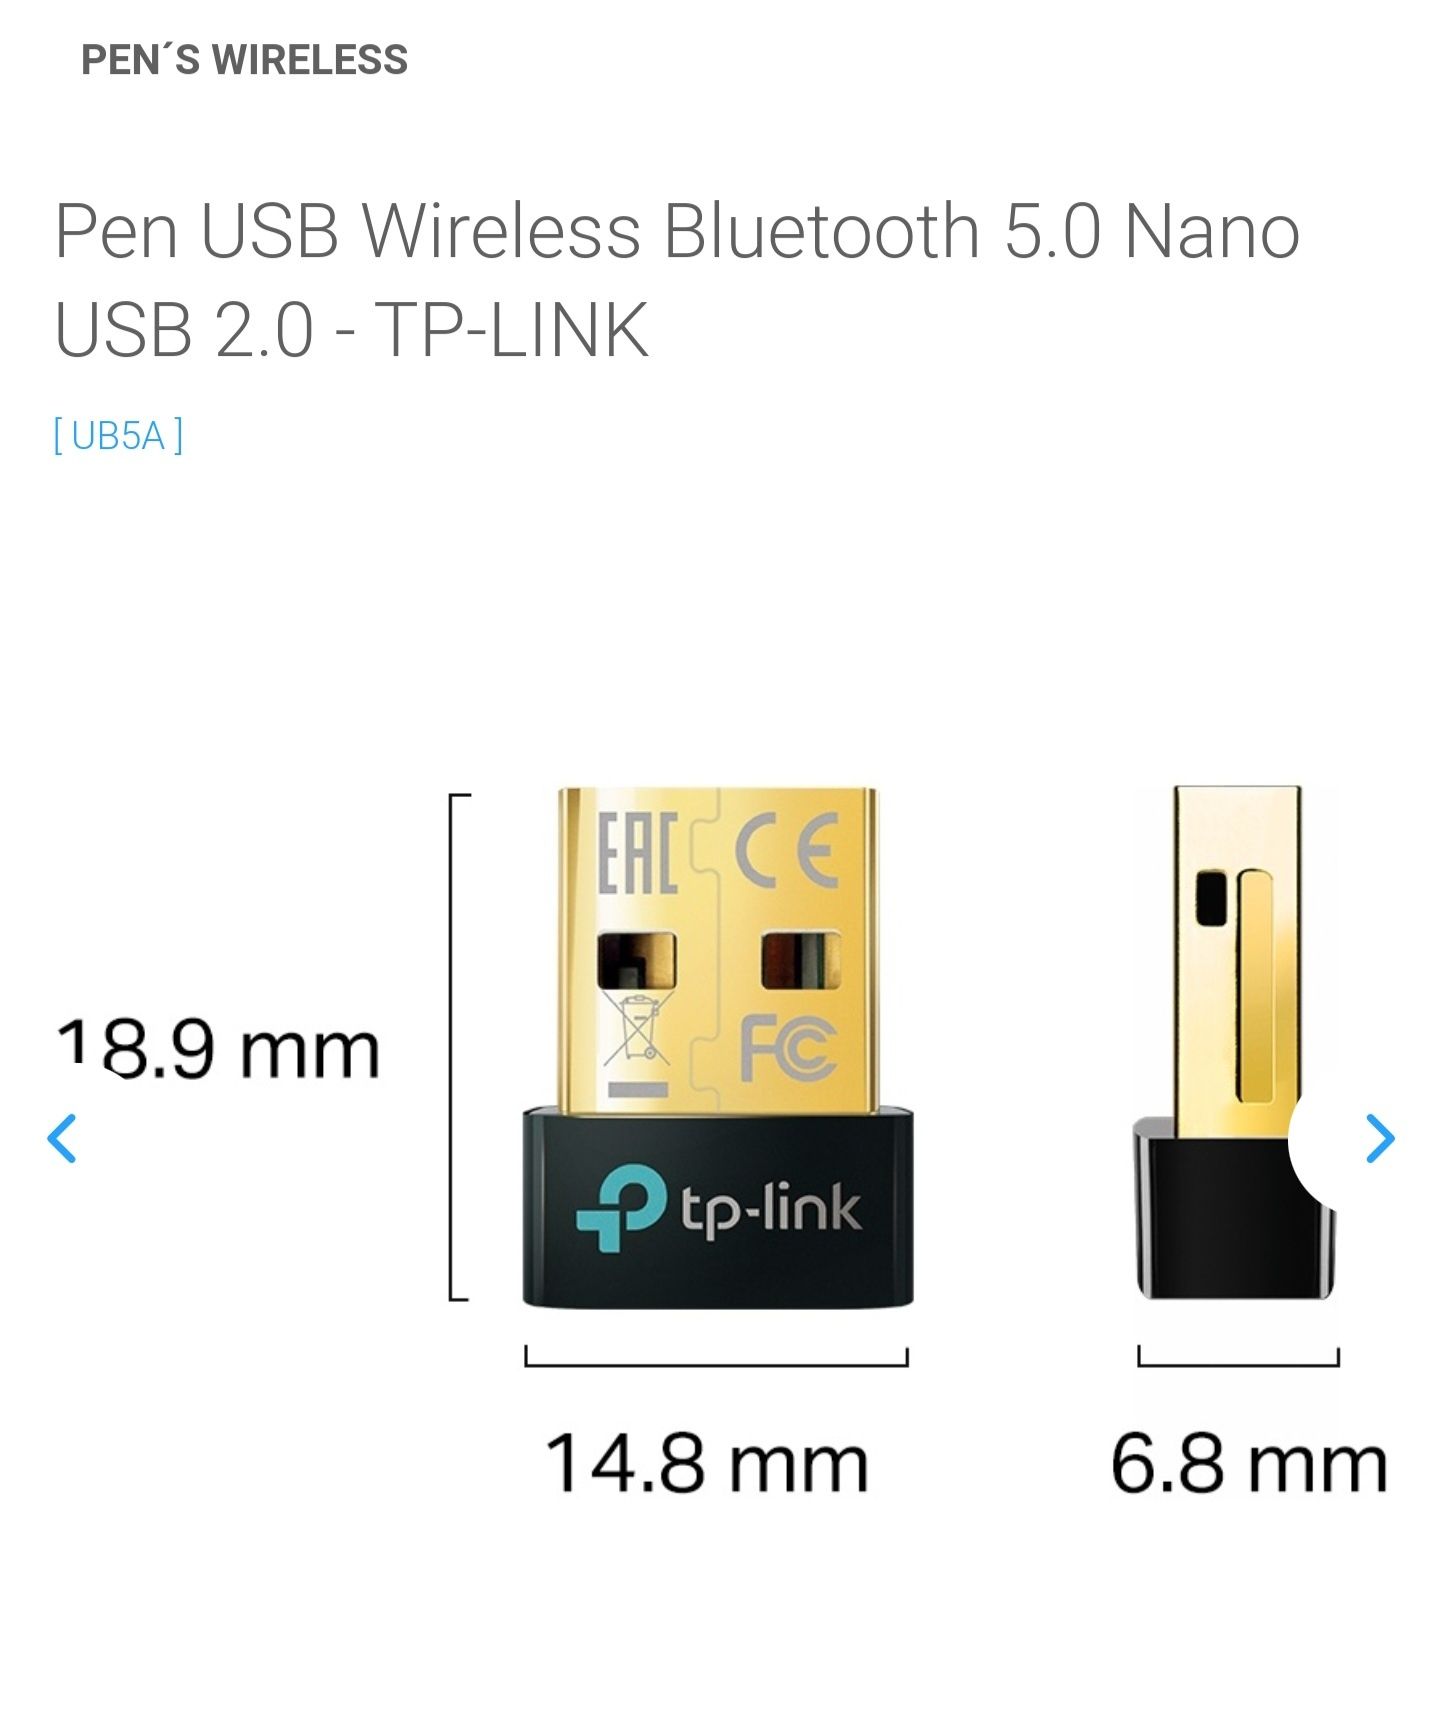 Pen USB Wireless Bluetooth 5.0 Nano USB 2.0 - TP-LINK

Entrego em m